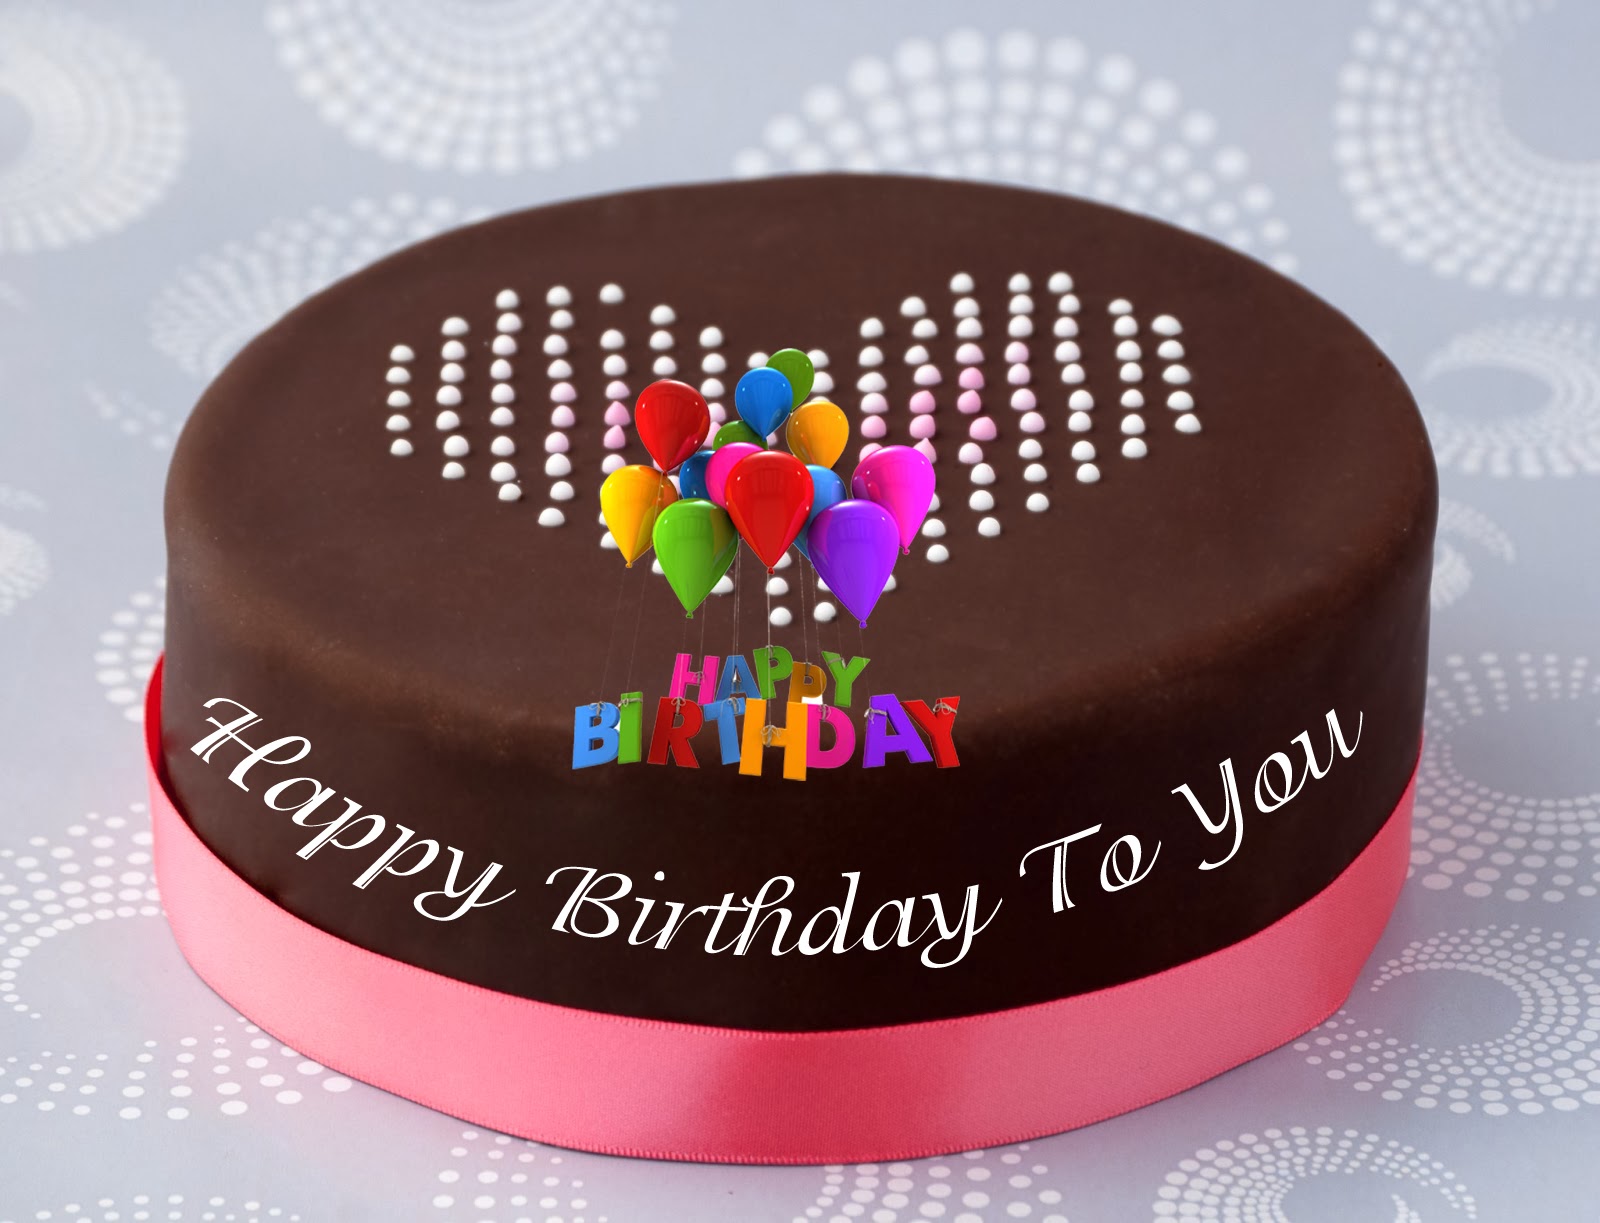 birthday wallpaper free download,cake,chocolate cake,cake decorating supply,baking,food